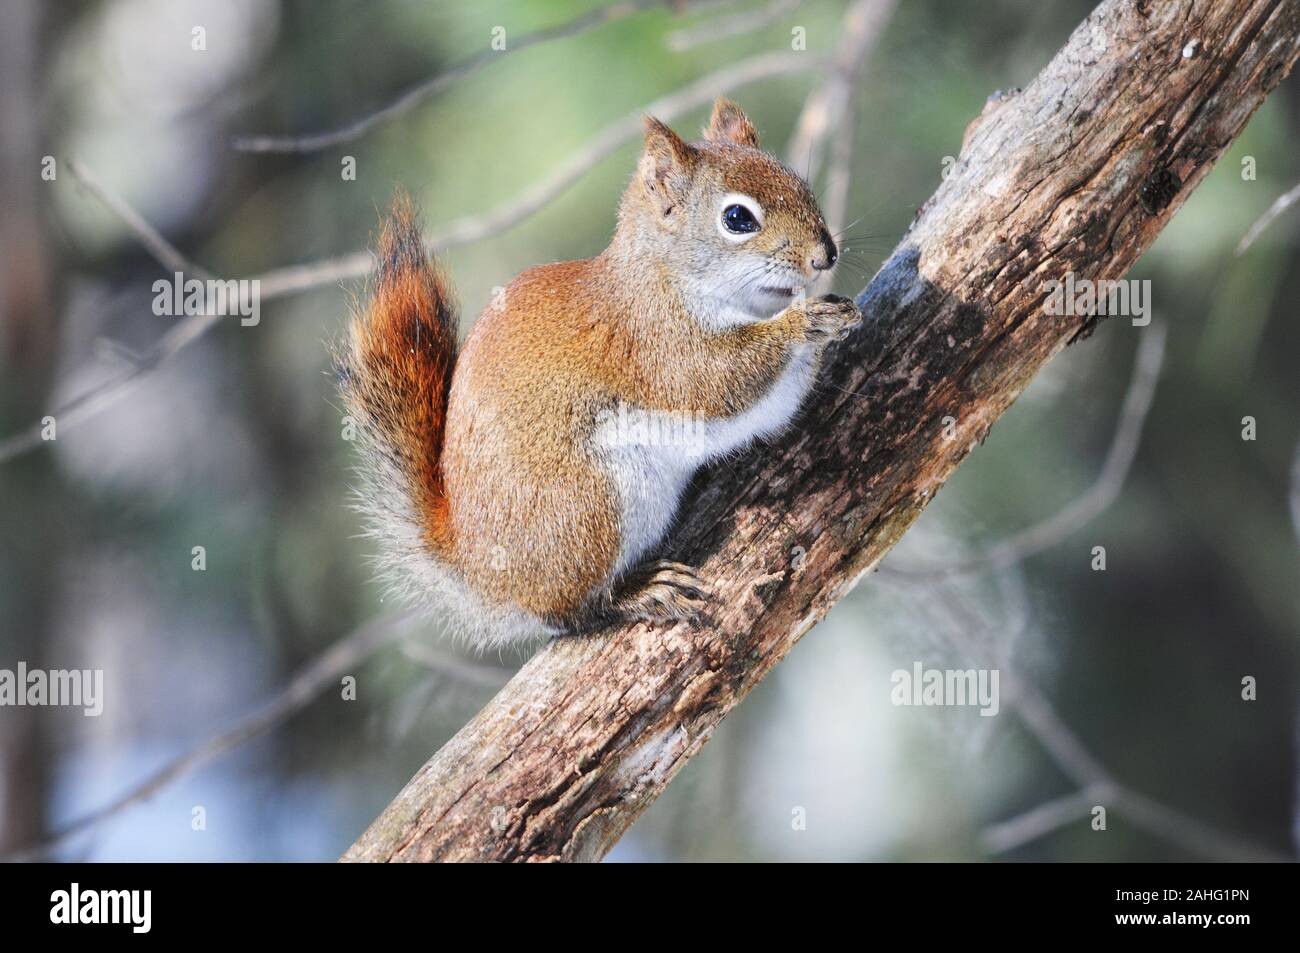 Eichhörnchen Tier close-up Profil anzeigen im Wald sitzt auf einem Ast Baum mit bokeh Hintergrund essen und Anzeigen braunes Fell, Kopf, Augen, Nase, Stockfoto